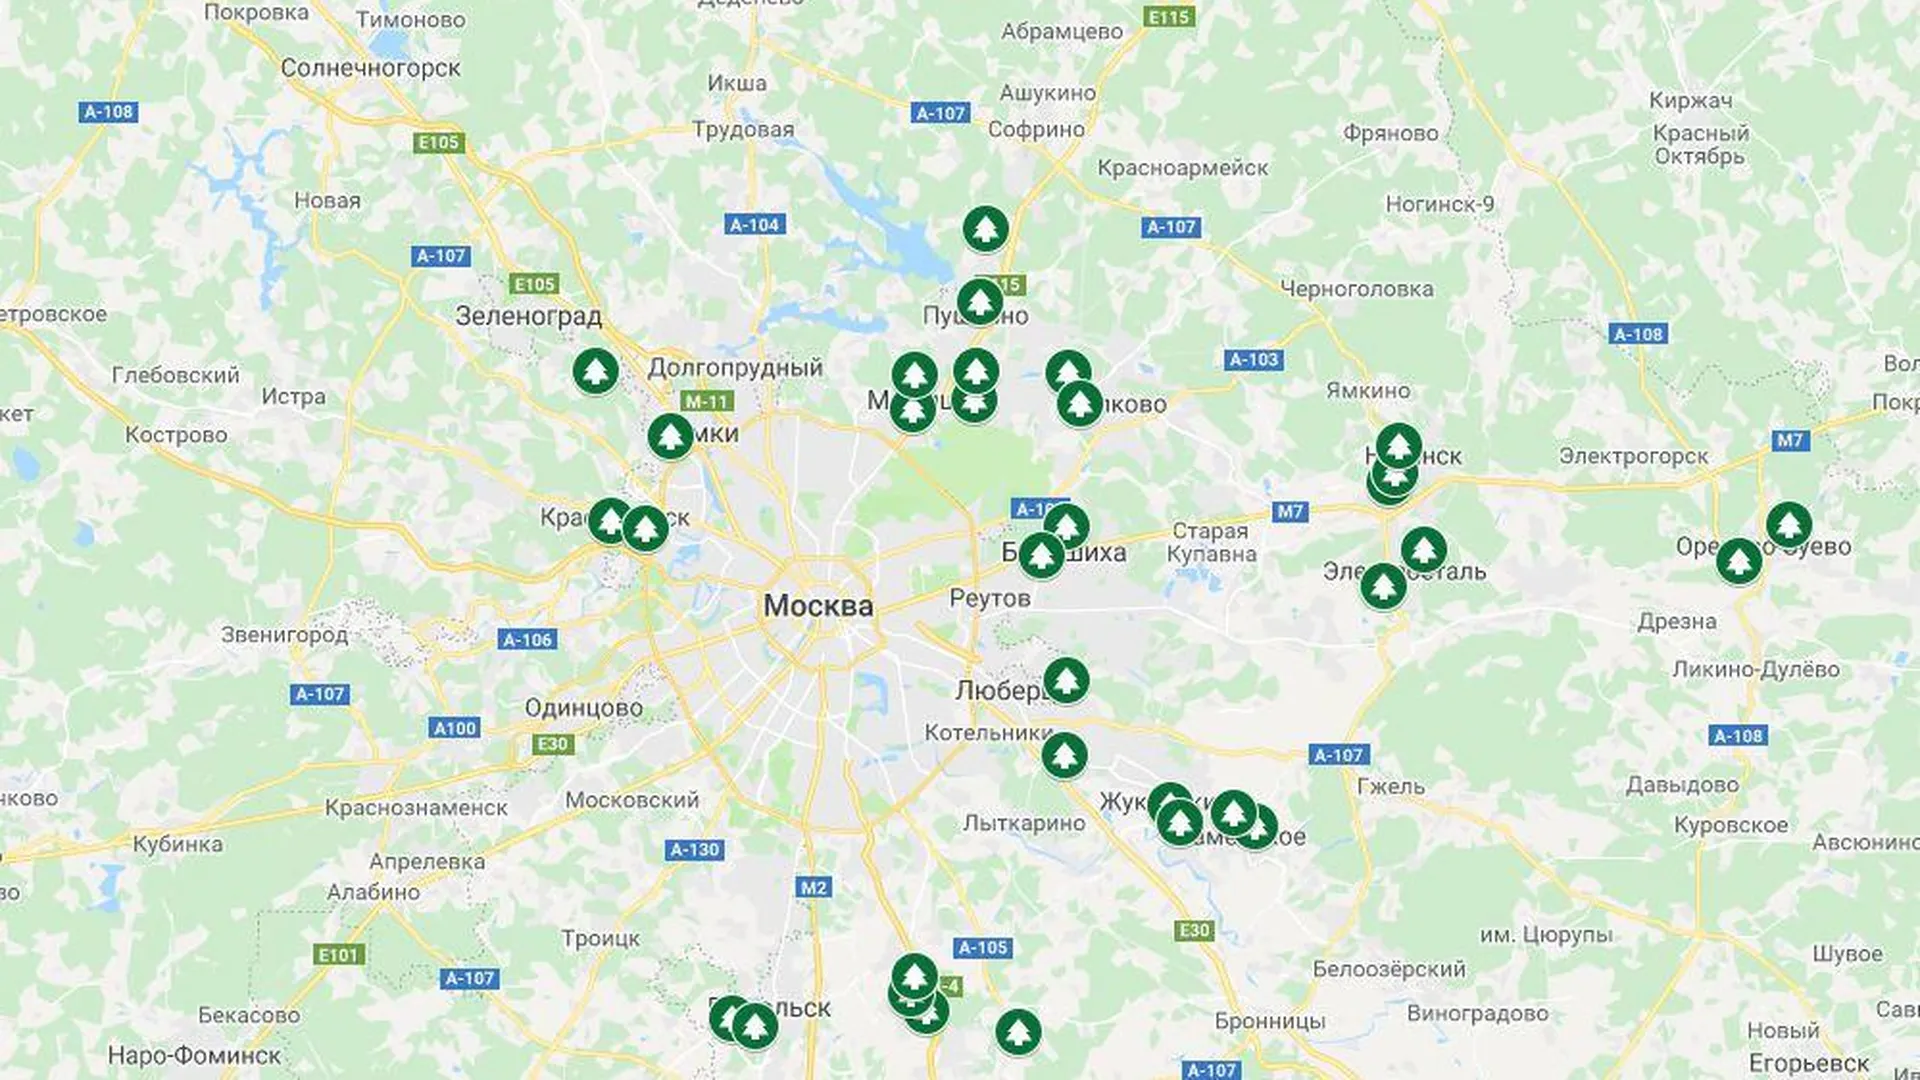 Адреса пунктов для приема новогодних елок в Подмосковье в 2019 году. Карта